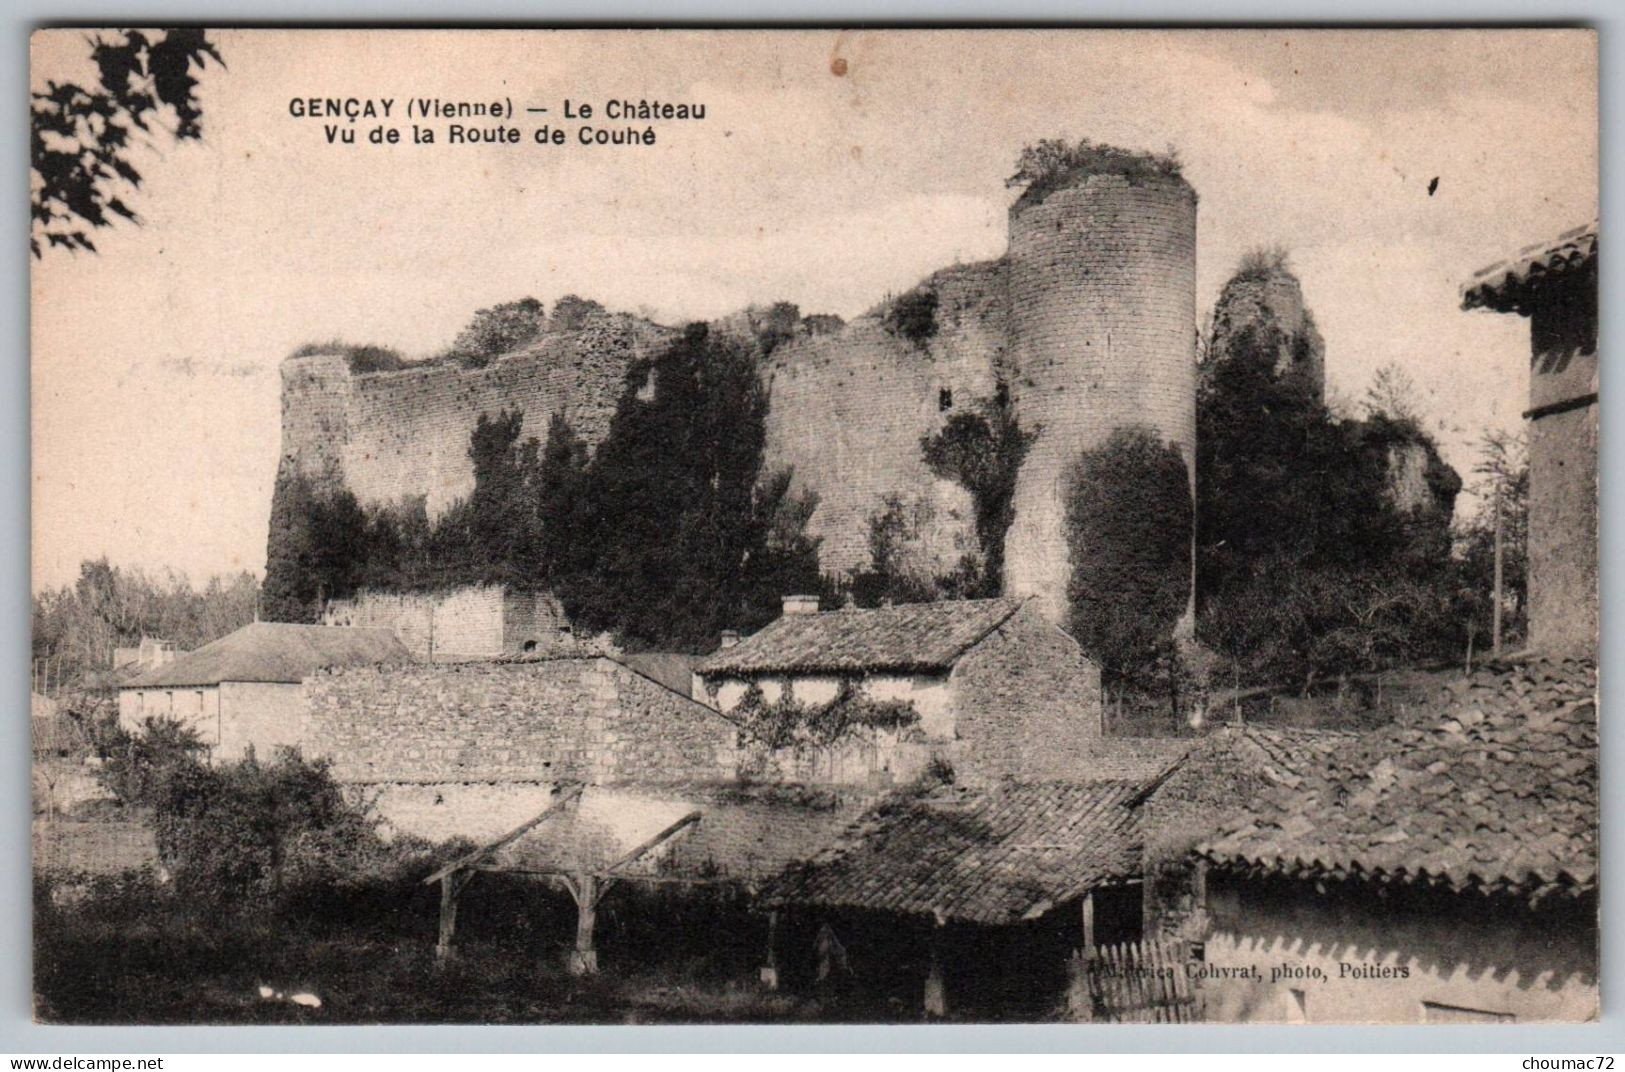 (86) 586, Gençay, Cohvrat Photo, Le Château Vu De La Route De Couhé - Gencay